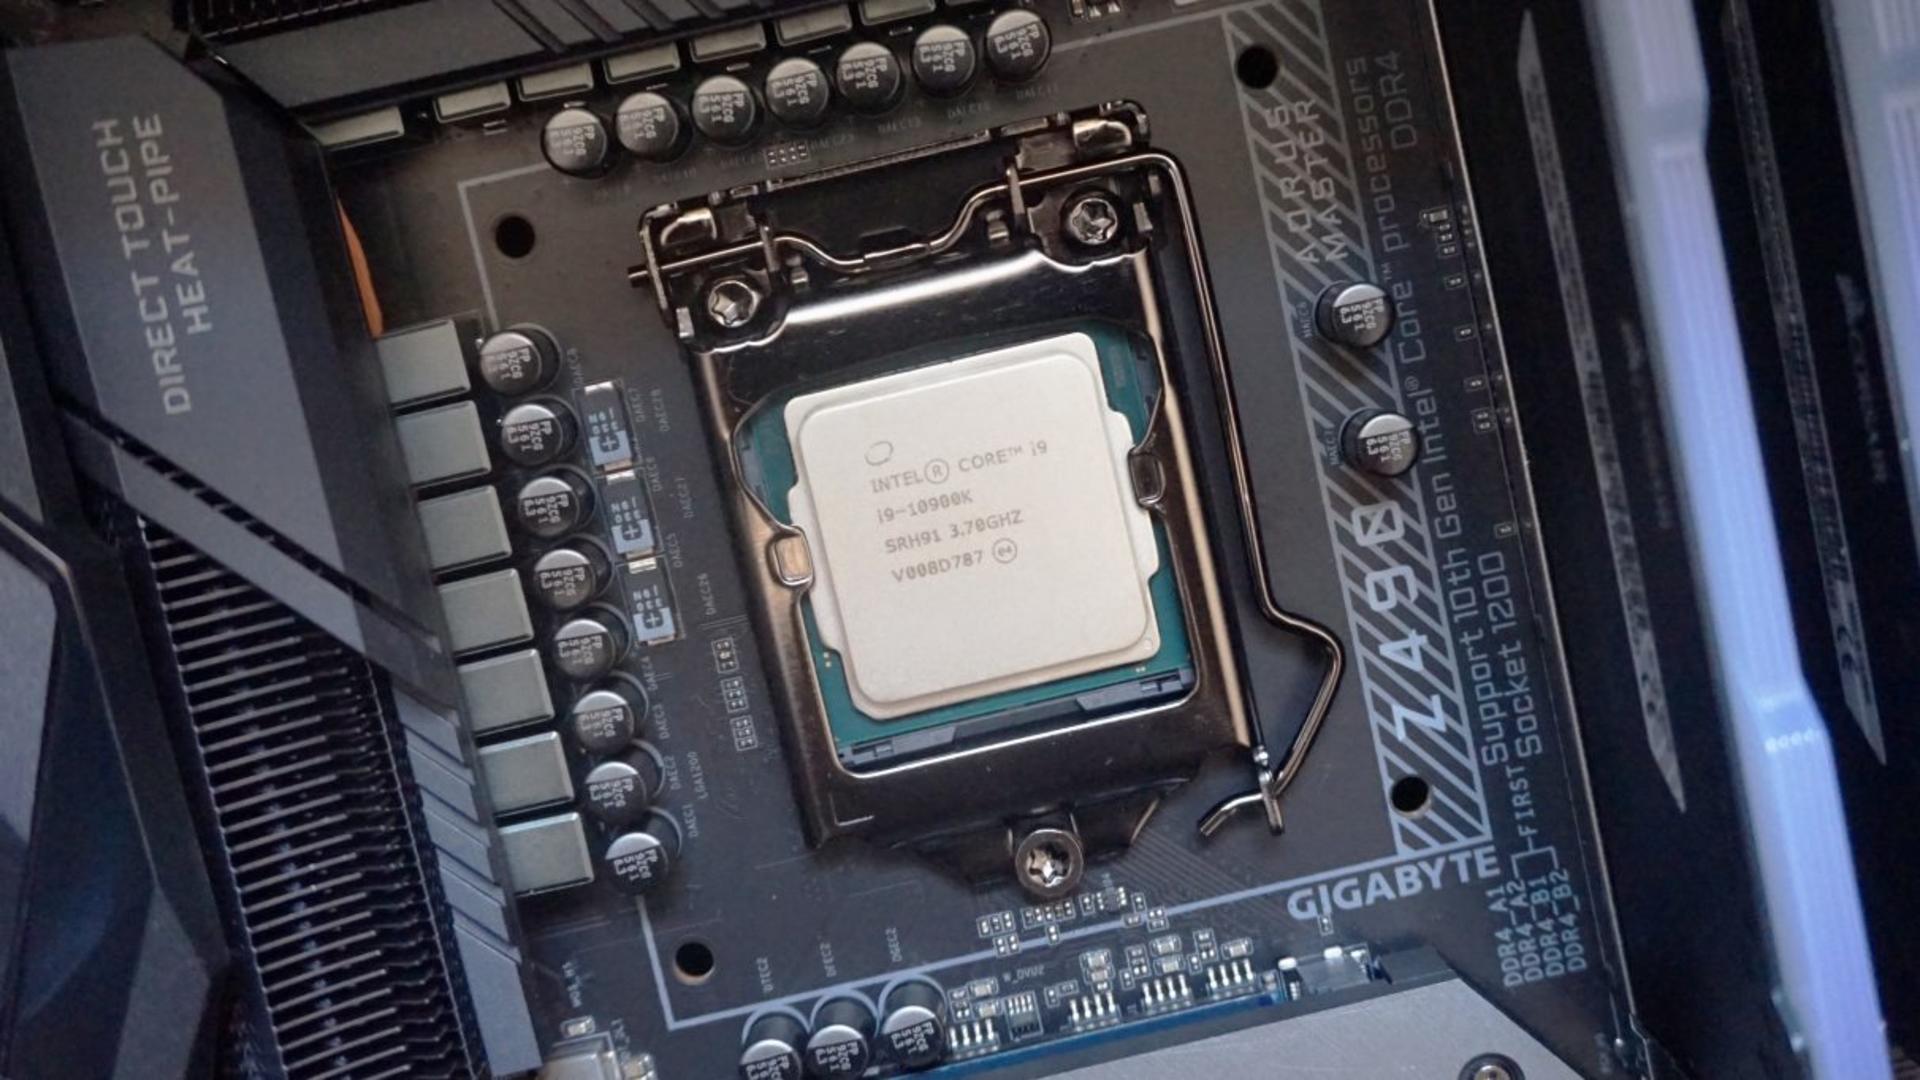 Build PC Gaming cao cấp với CPU Intel thế hệ thứ 10 - i9 10900k